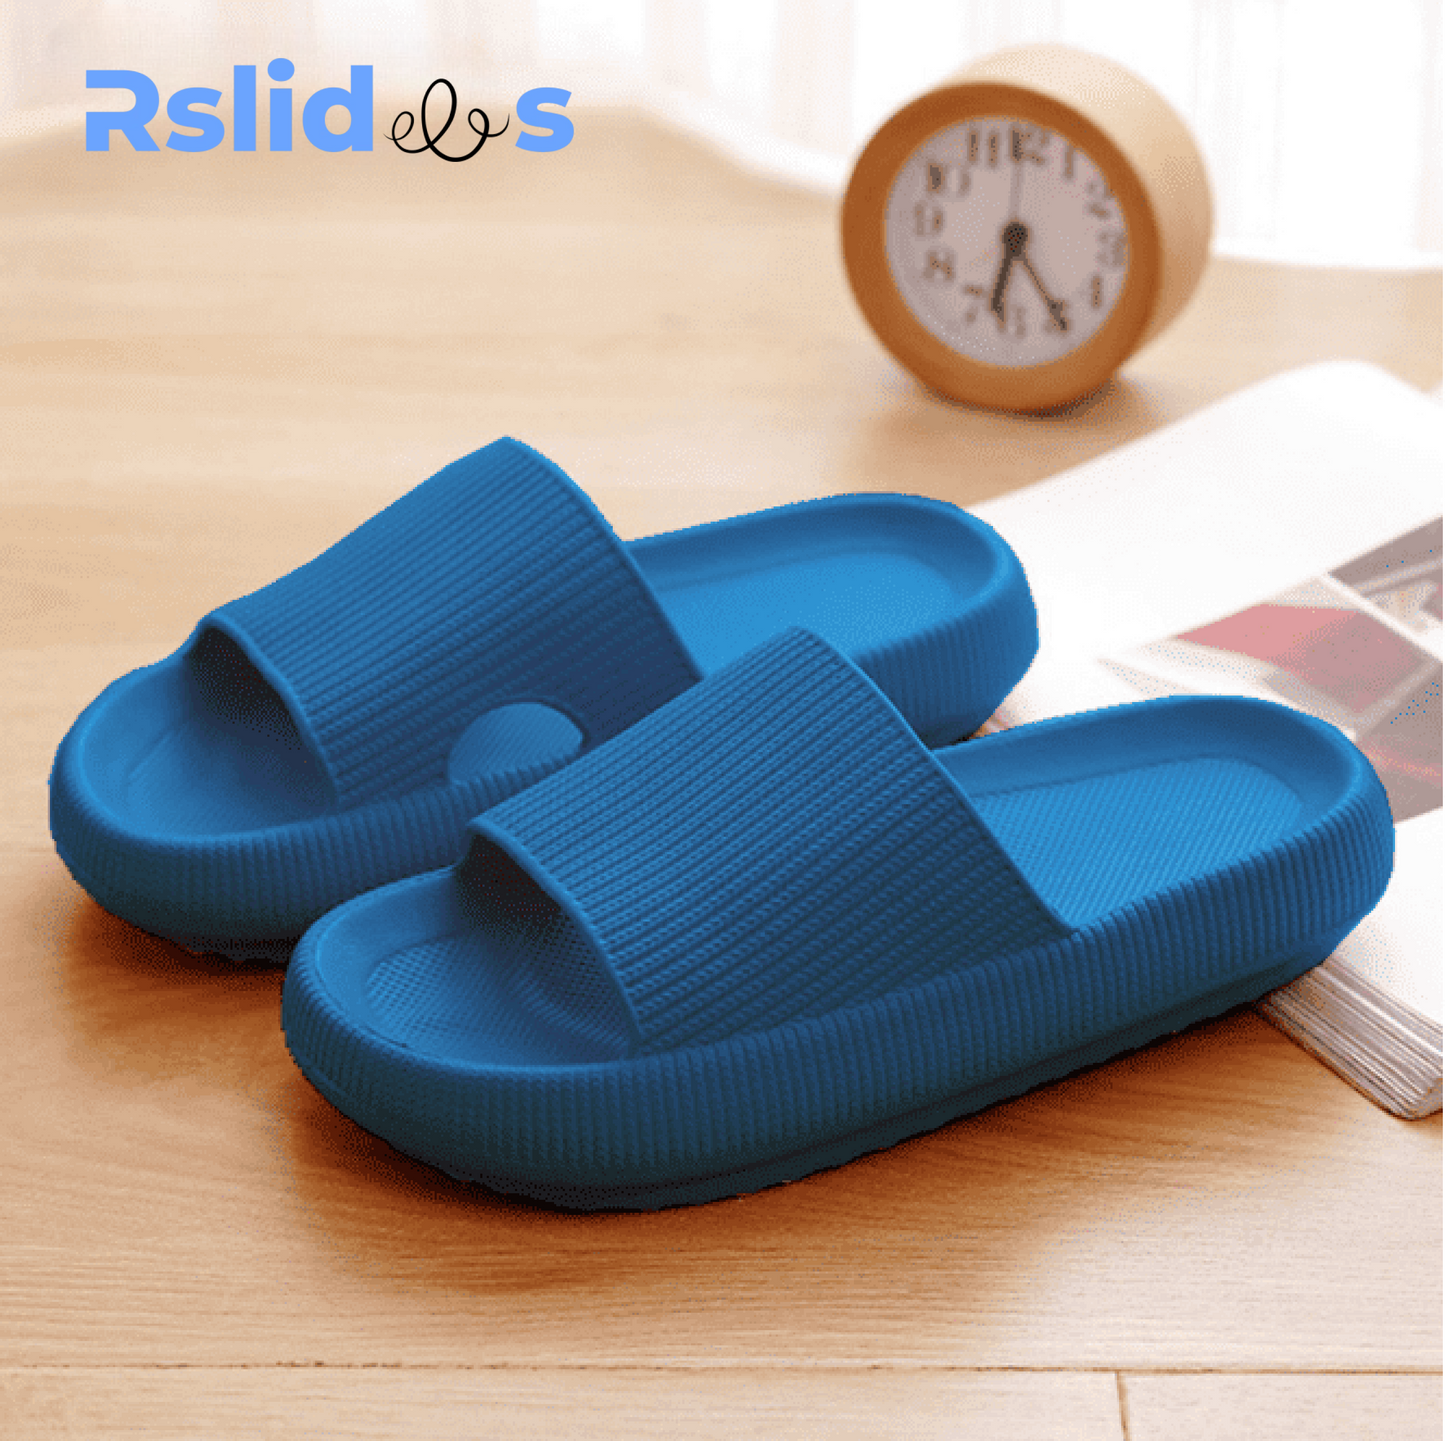 The RSLIDES™ - Cloud sandals